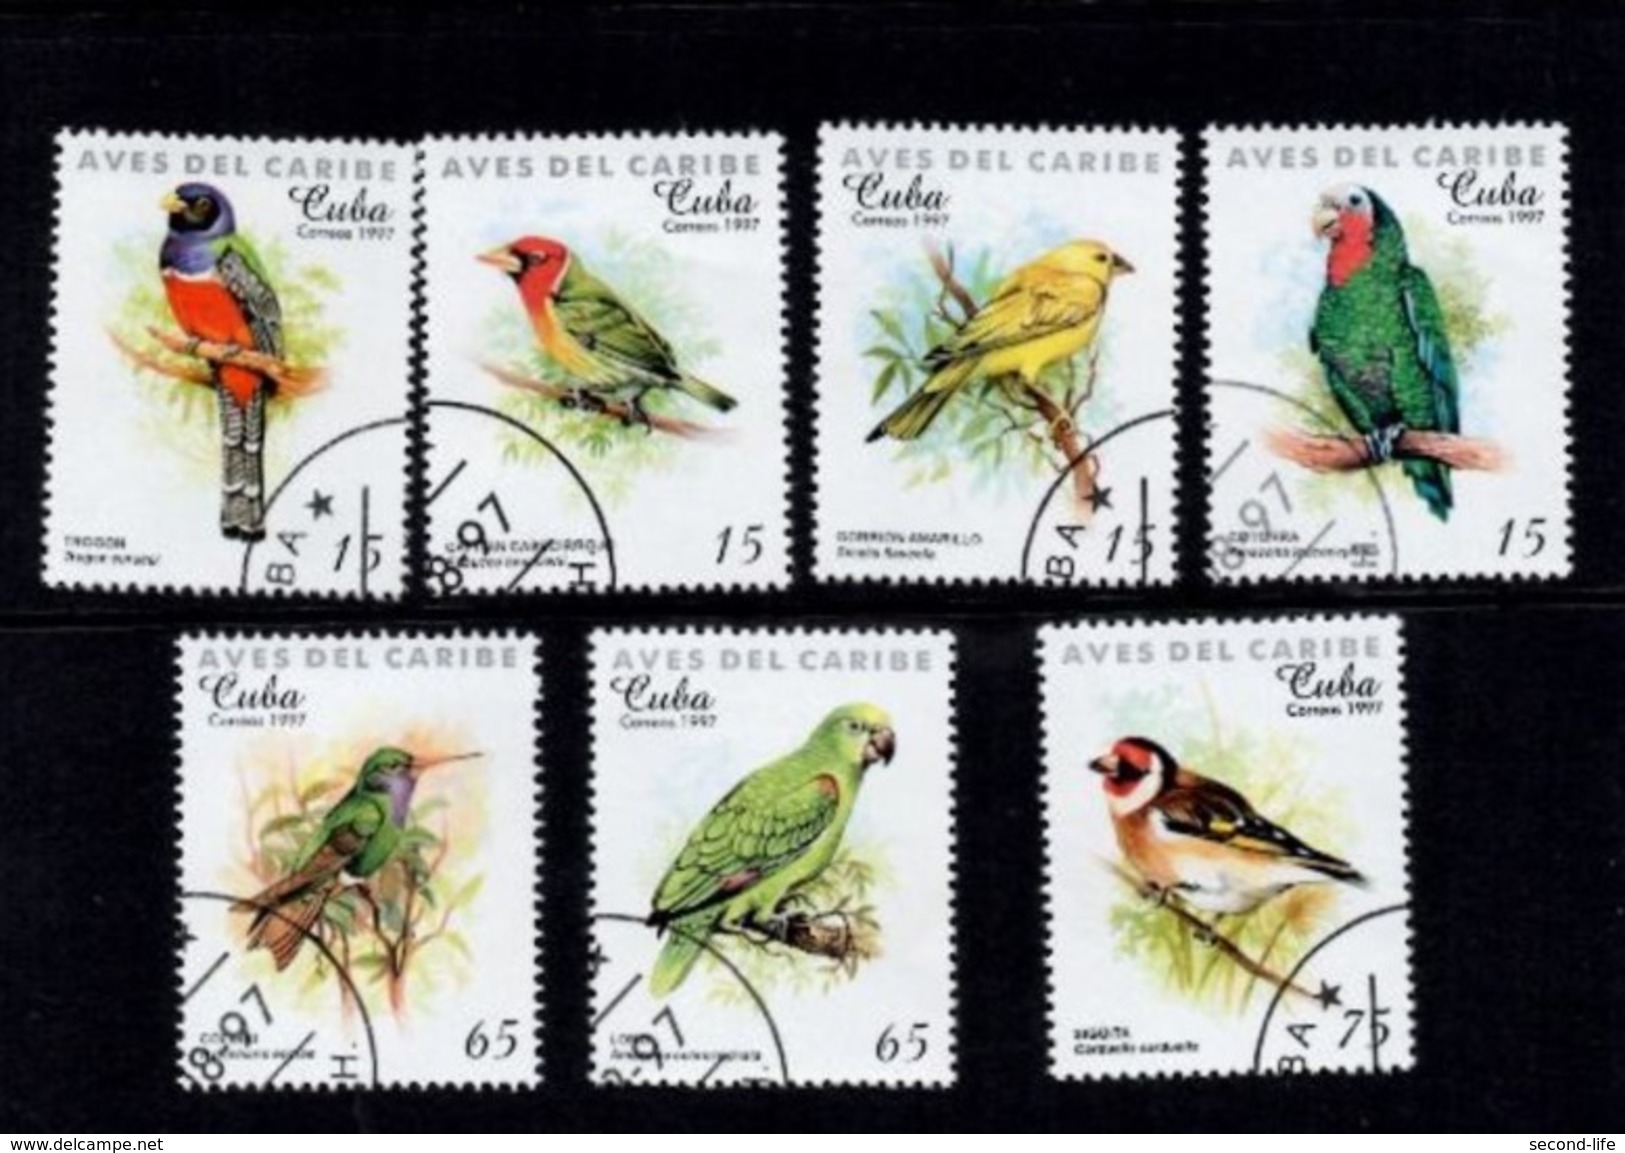 Birds Aves Del Caribe. Cuba 1977 - Prephilately